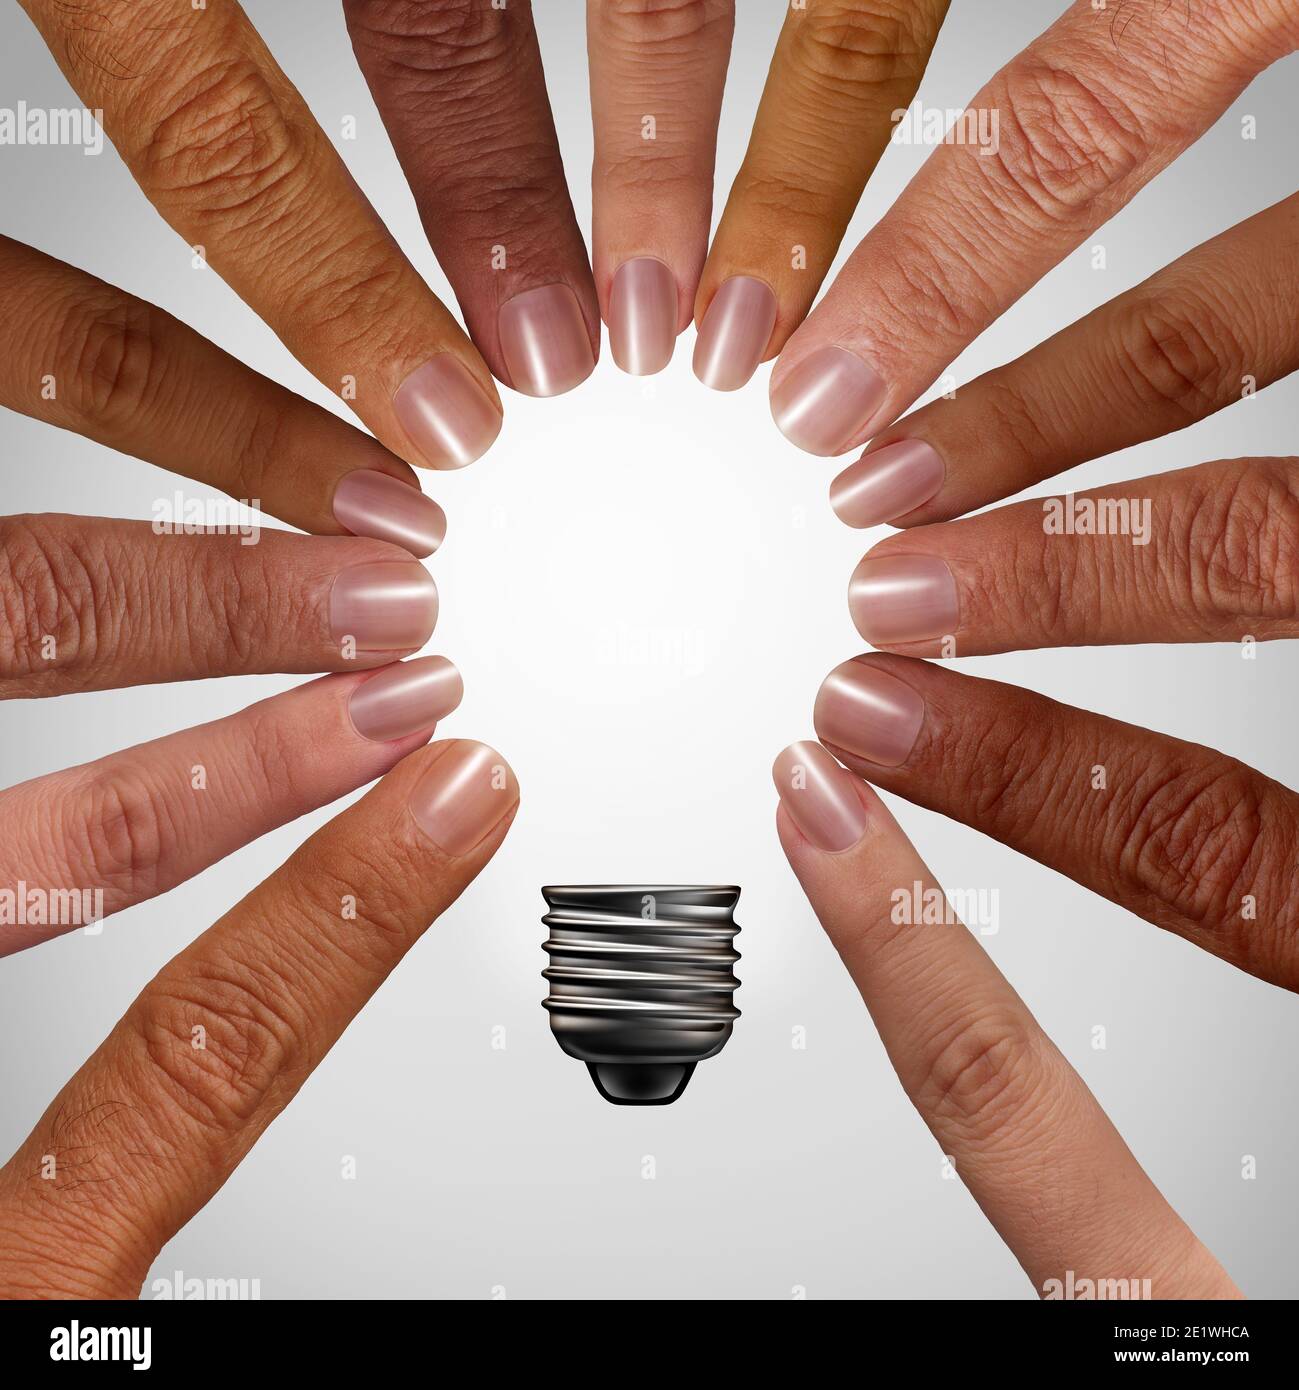 Penser ensemble concept comme un groupe diversifié reliant et se joindre à la forme d'une ampoule d'inspiration comme une métaphore de soutien communautaire. Banque D'Images